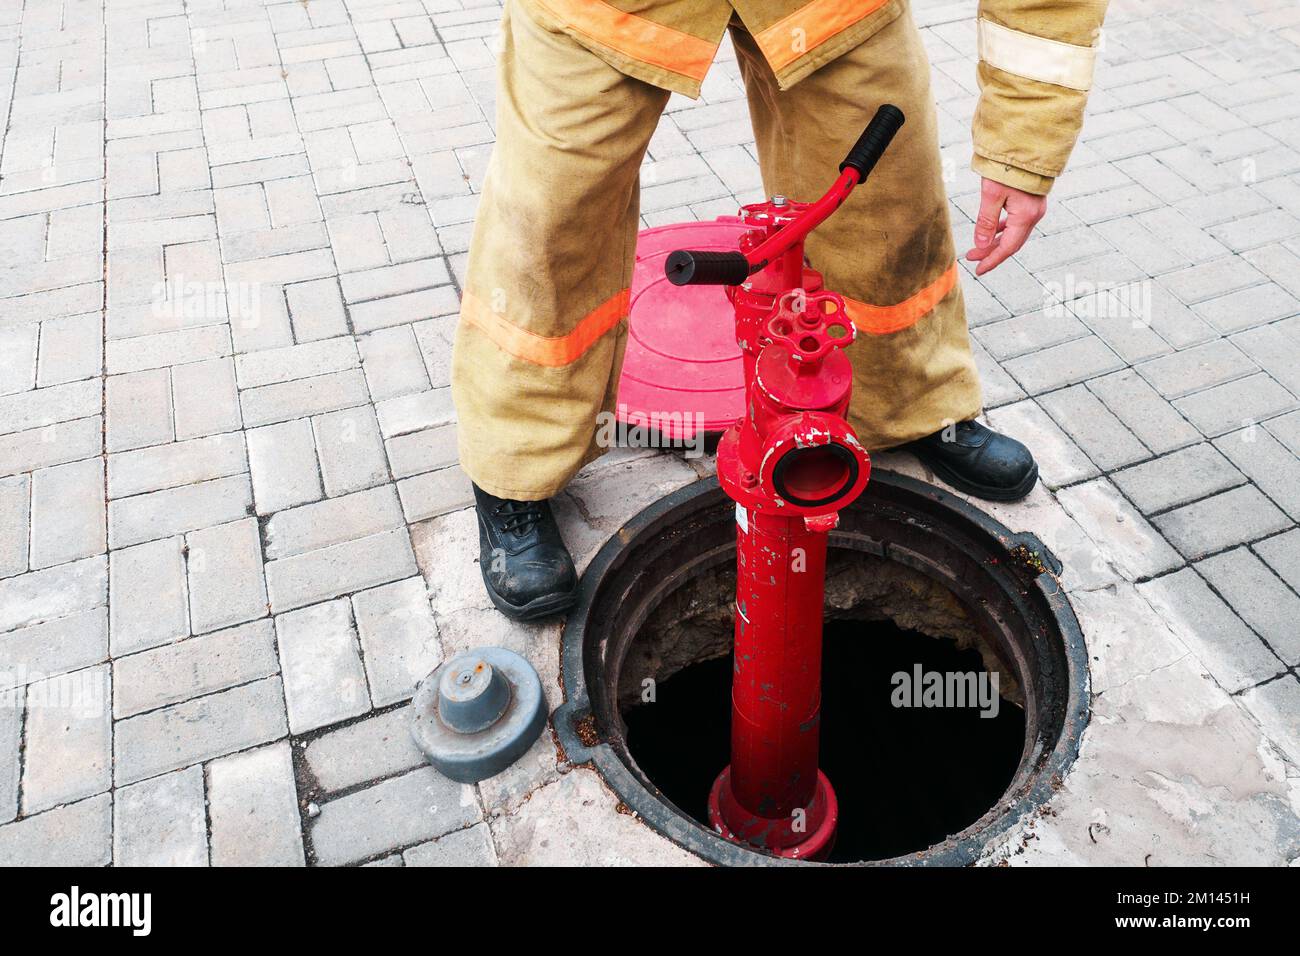 Feuerwehrmann oder Retter installiert Hydranten im offenen Brunnen. Feuerwehrarbeit im Brandfall. Schulung und praktische Übungen im Brandfall. Hintergrund... Stockfoto